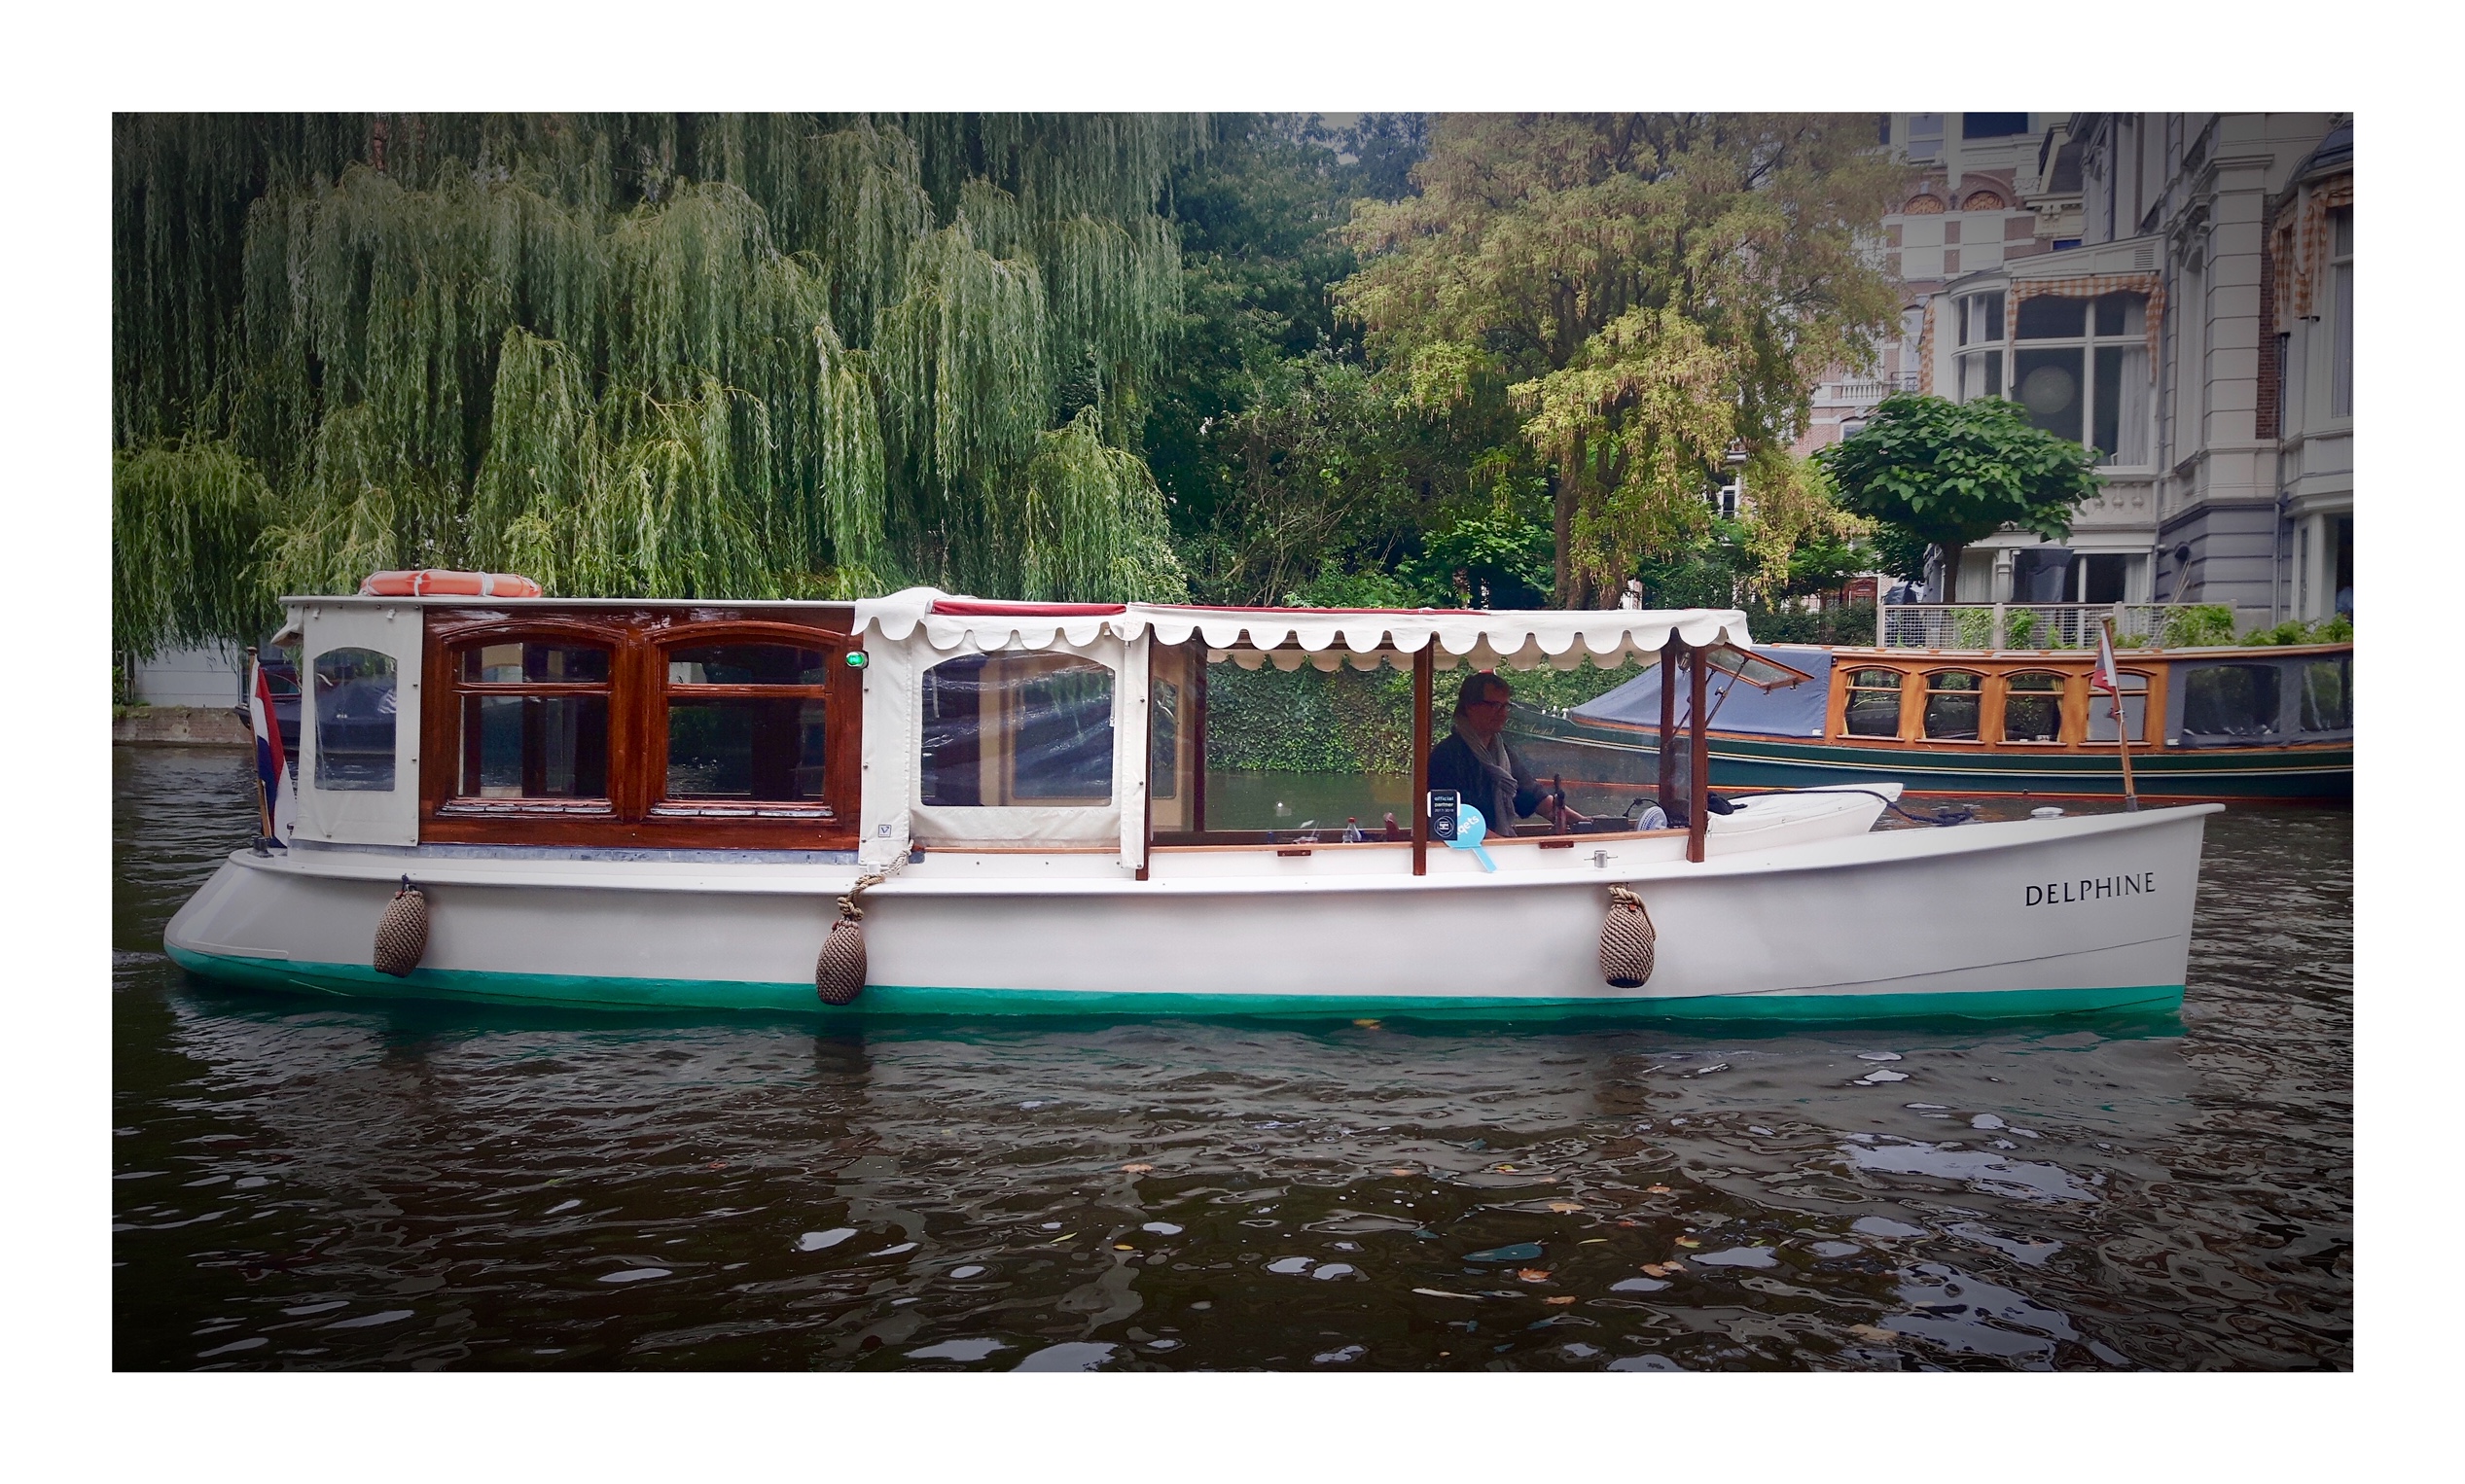 private-canal-boat-amsterdam-delphine